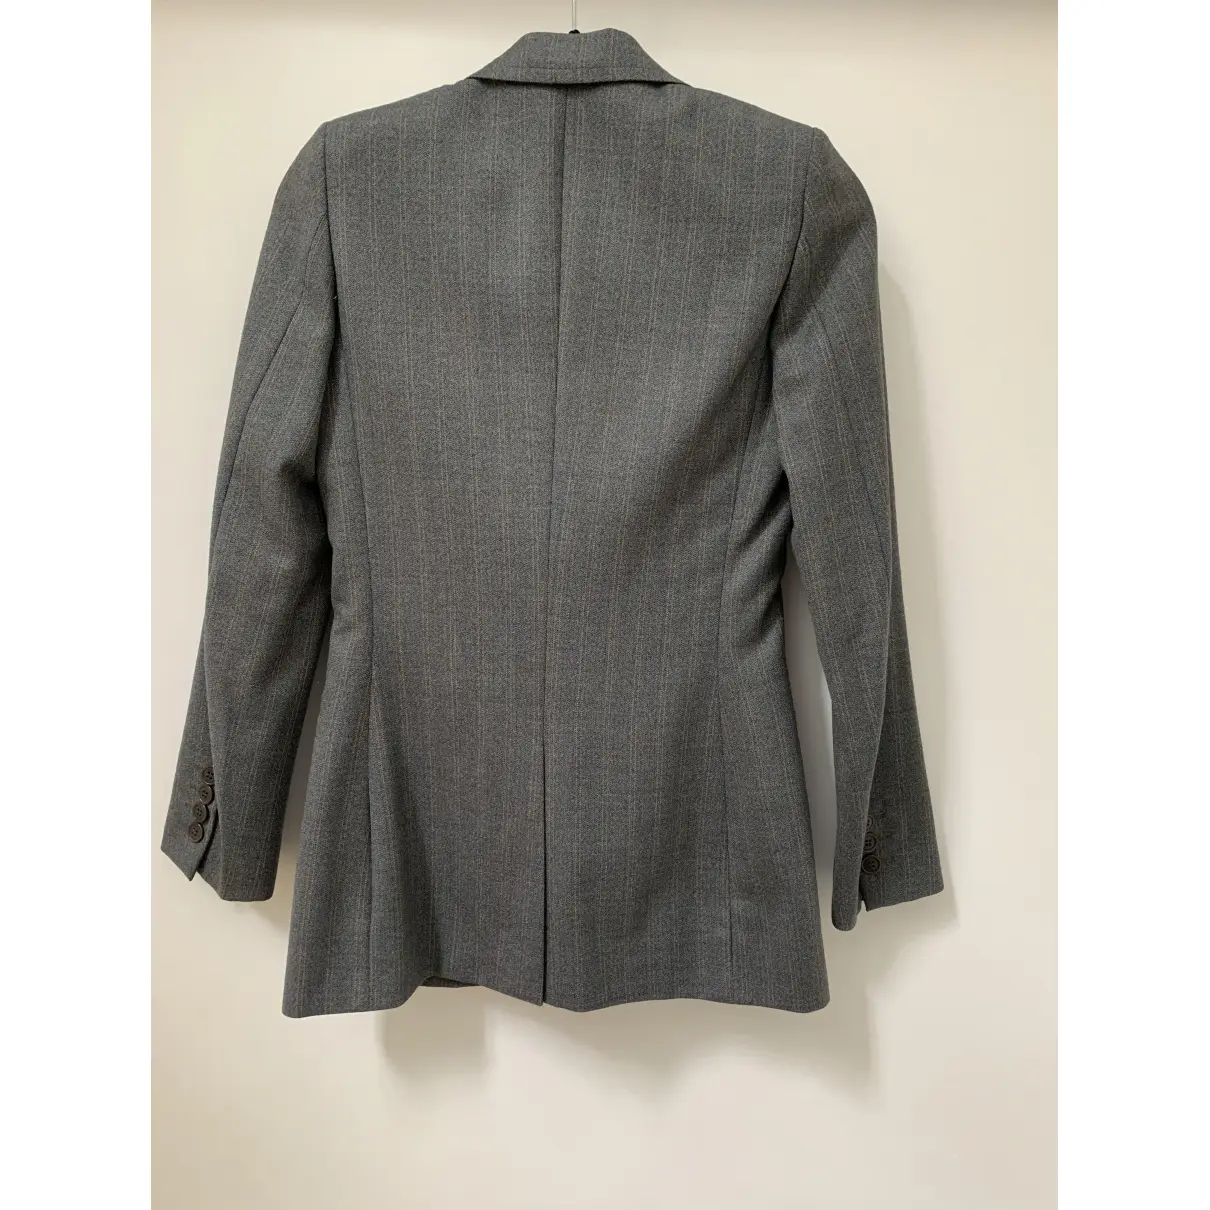 Buy Chloé Wool suit jacket online